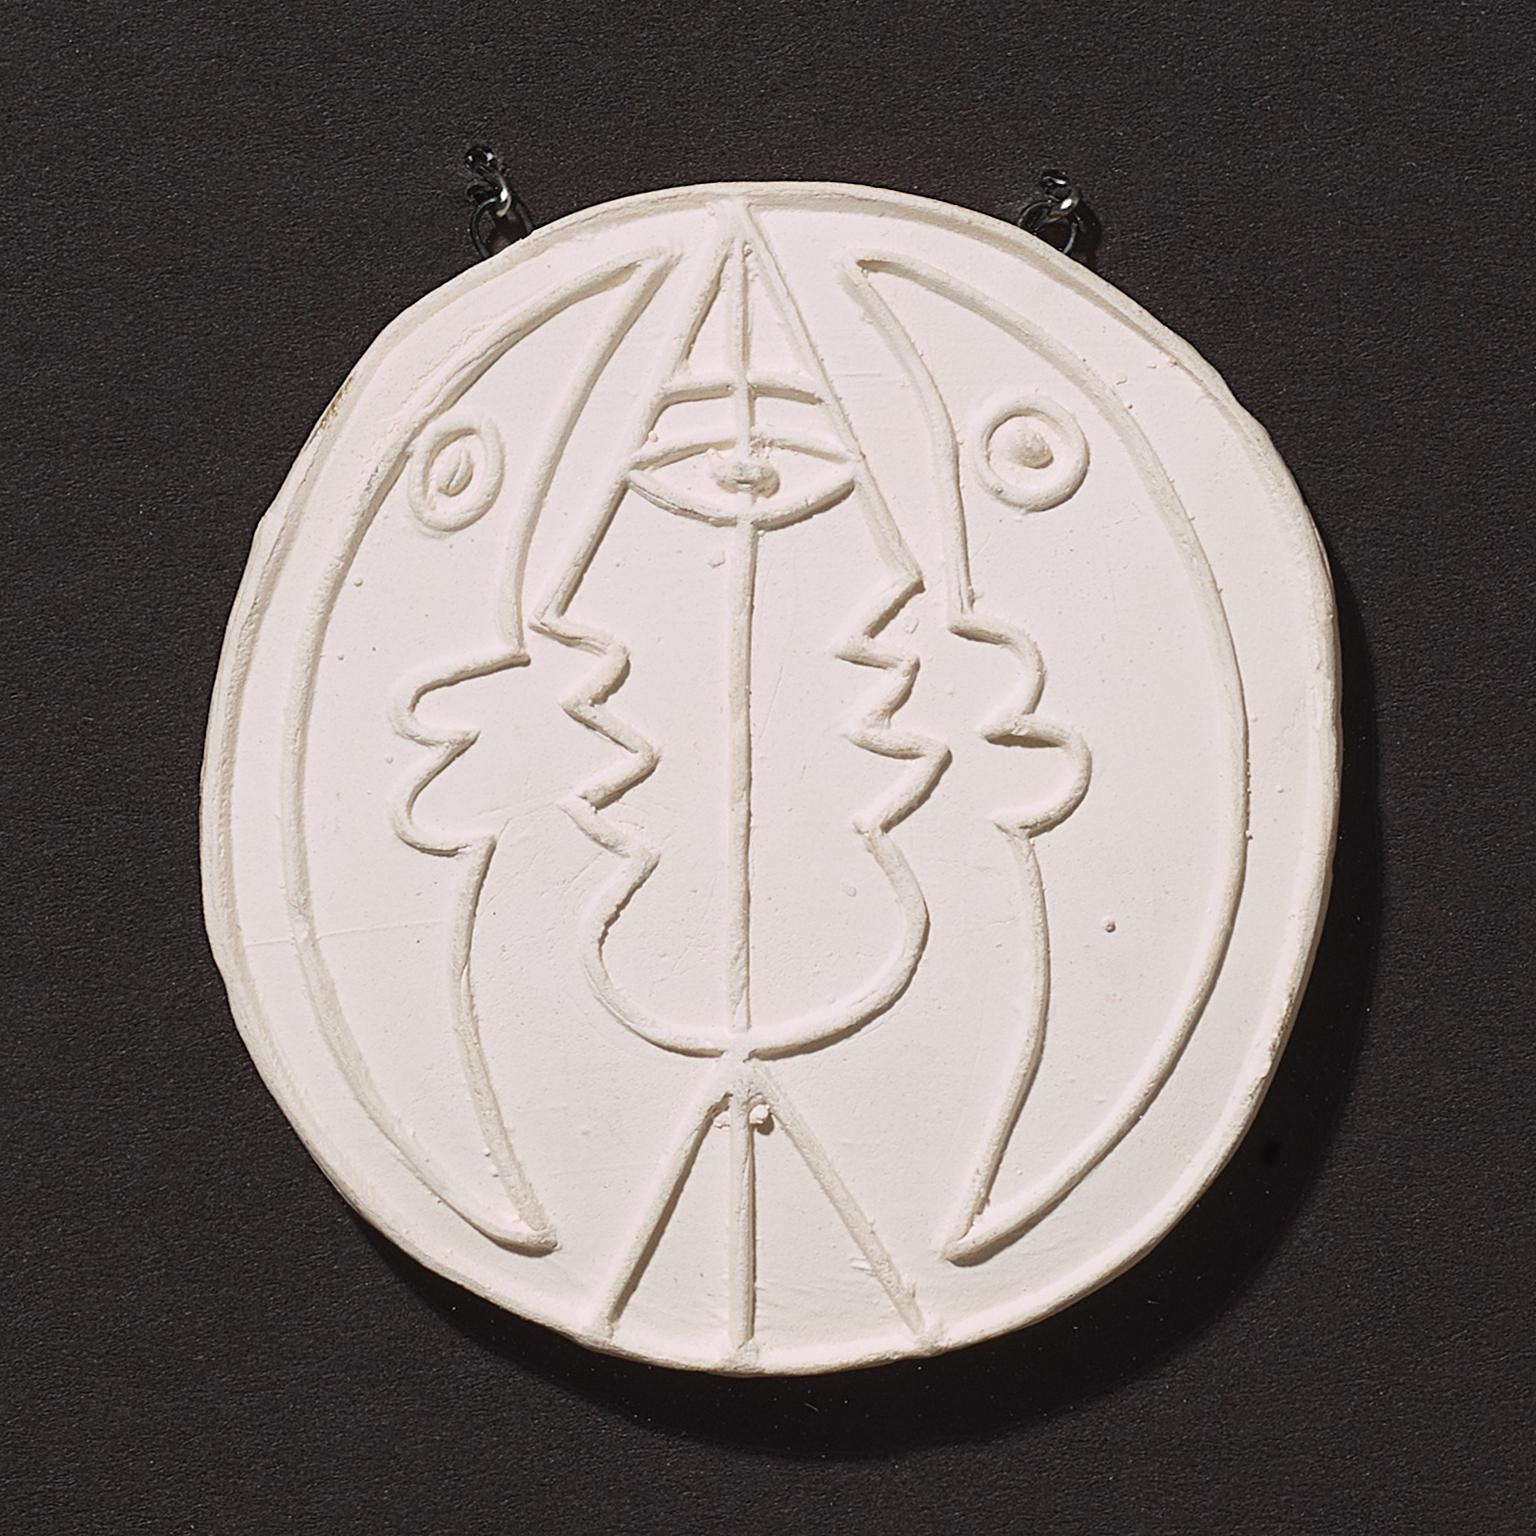 Original ceramic pendant 